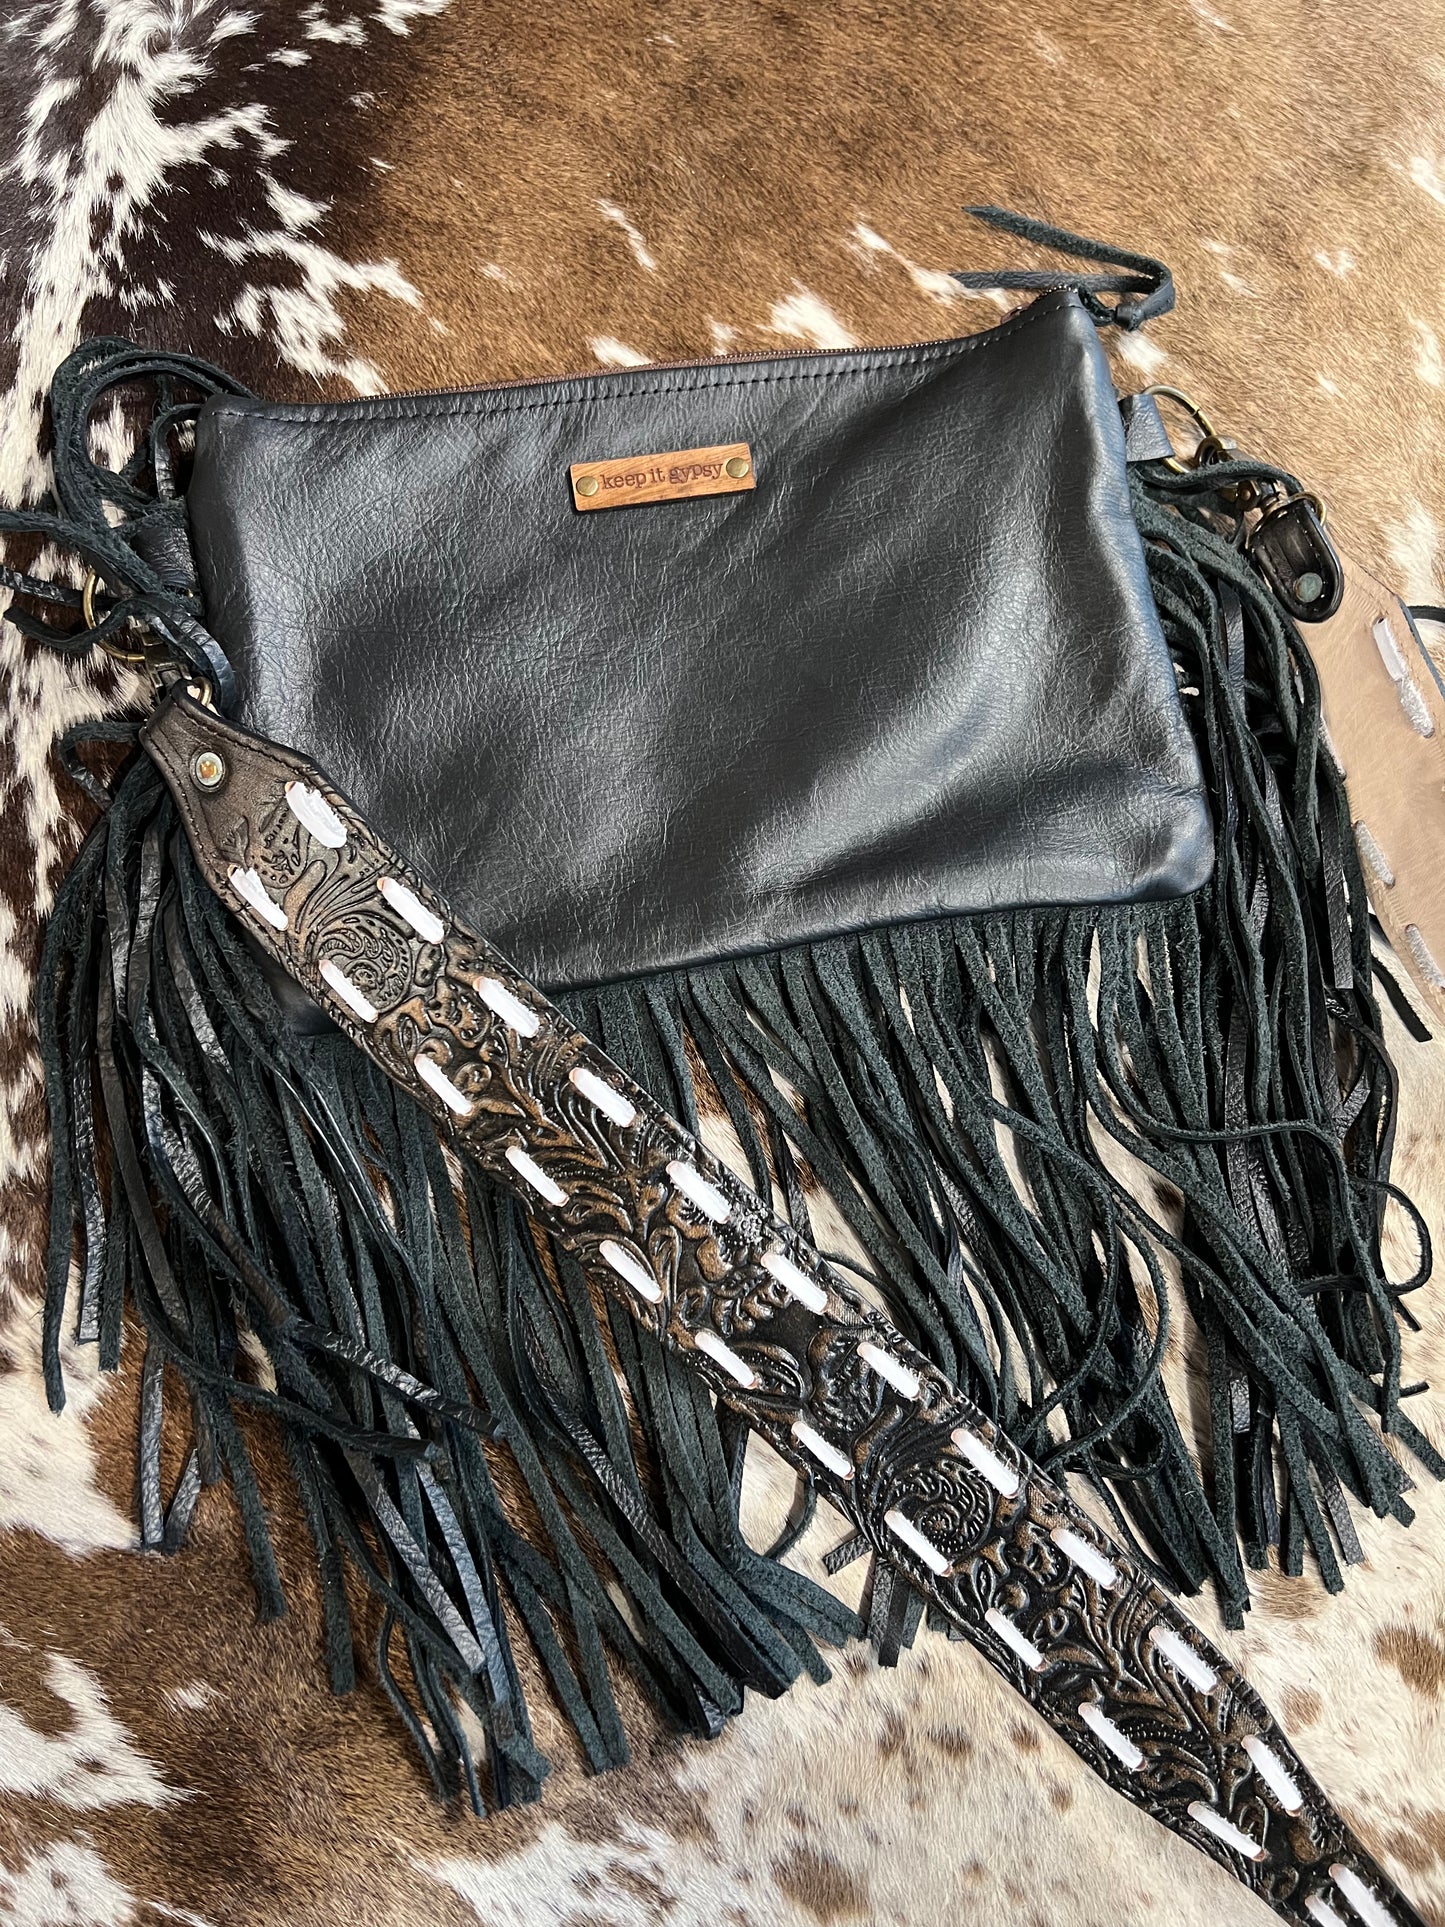 Gypsy Black Patchwork Bag